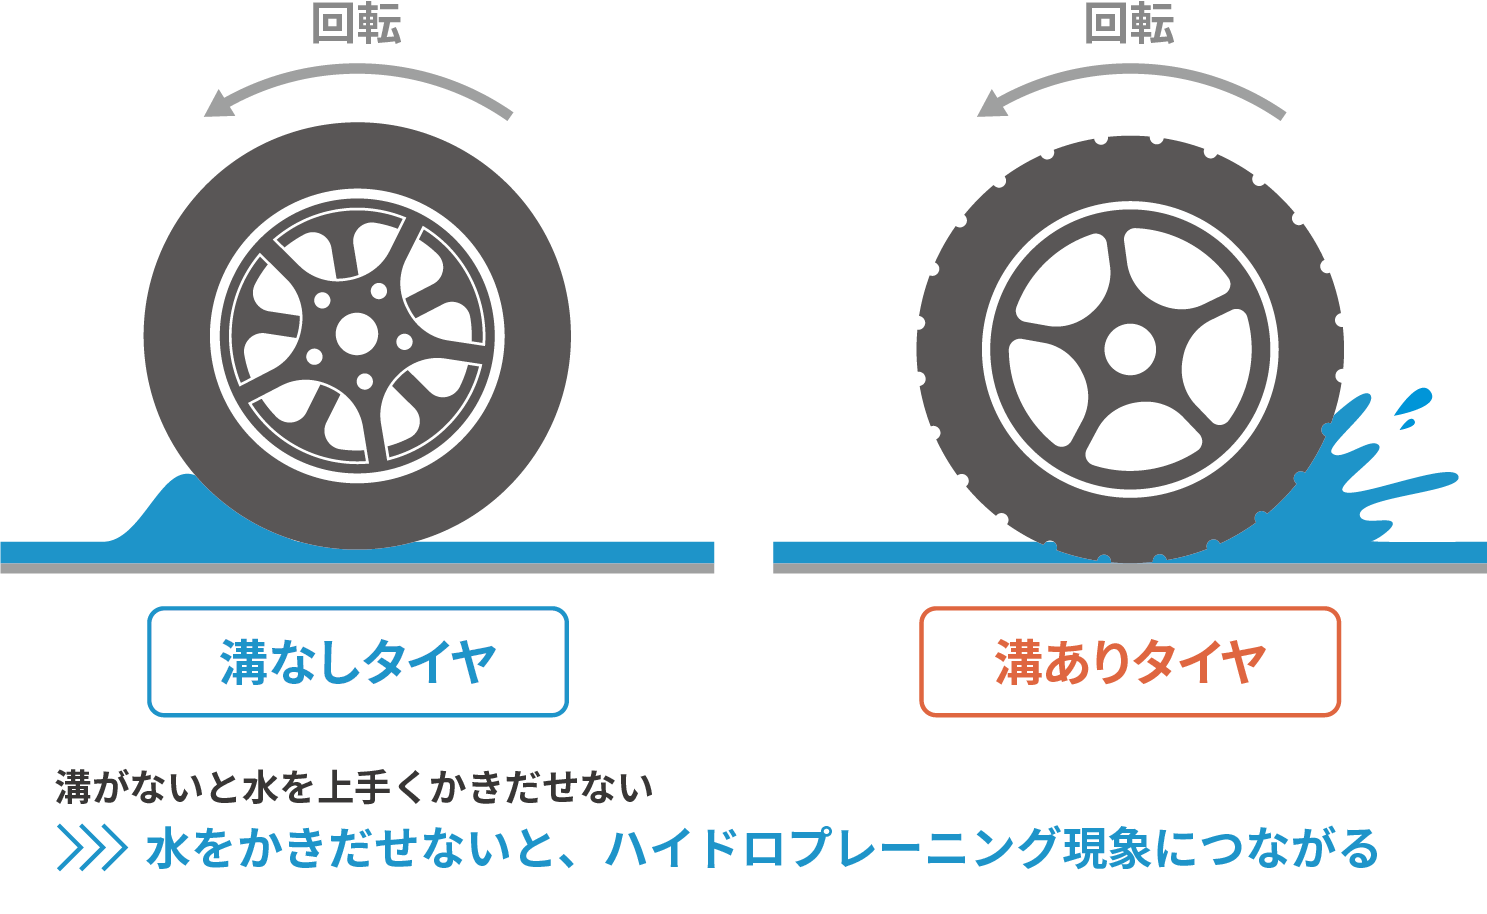 タイヤの残溝とハイドロプレーニング現象の関係図